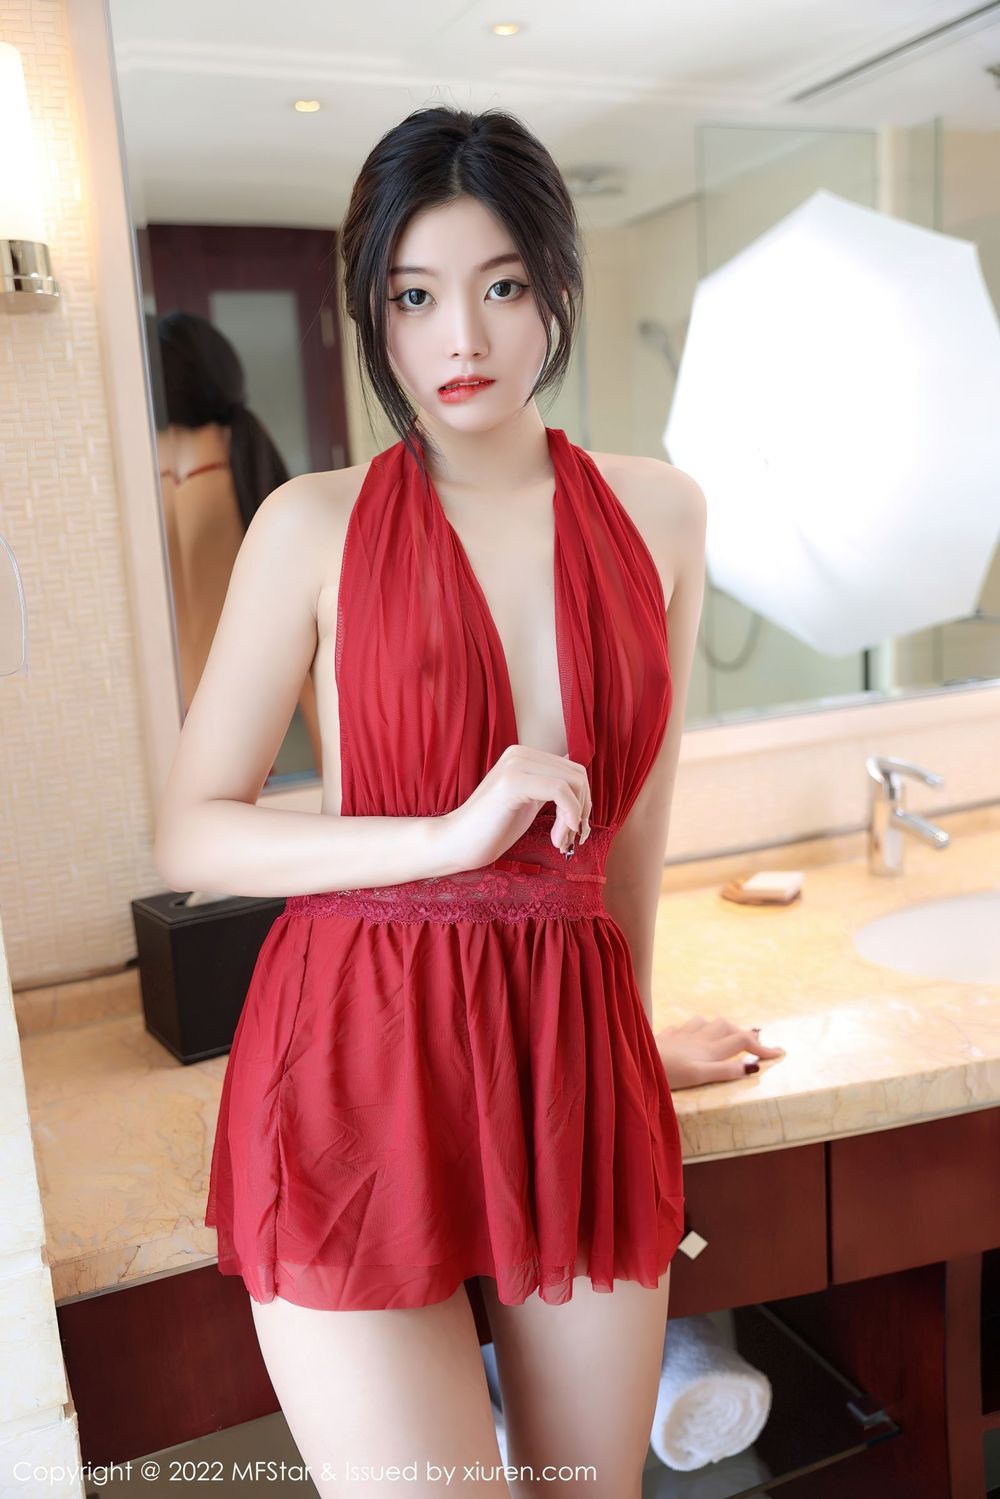 新人模特韩好甜 - 红色短裙+高跟鞋系列写真